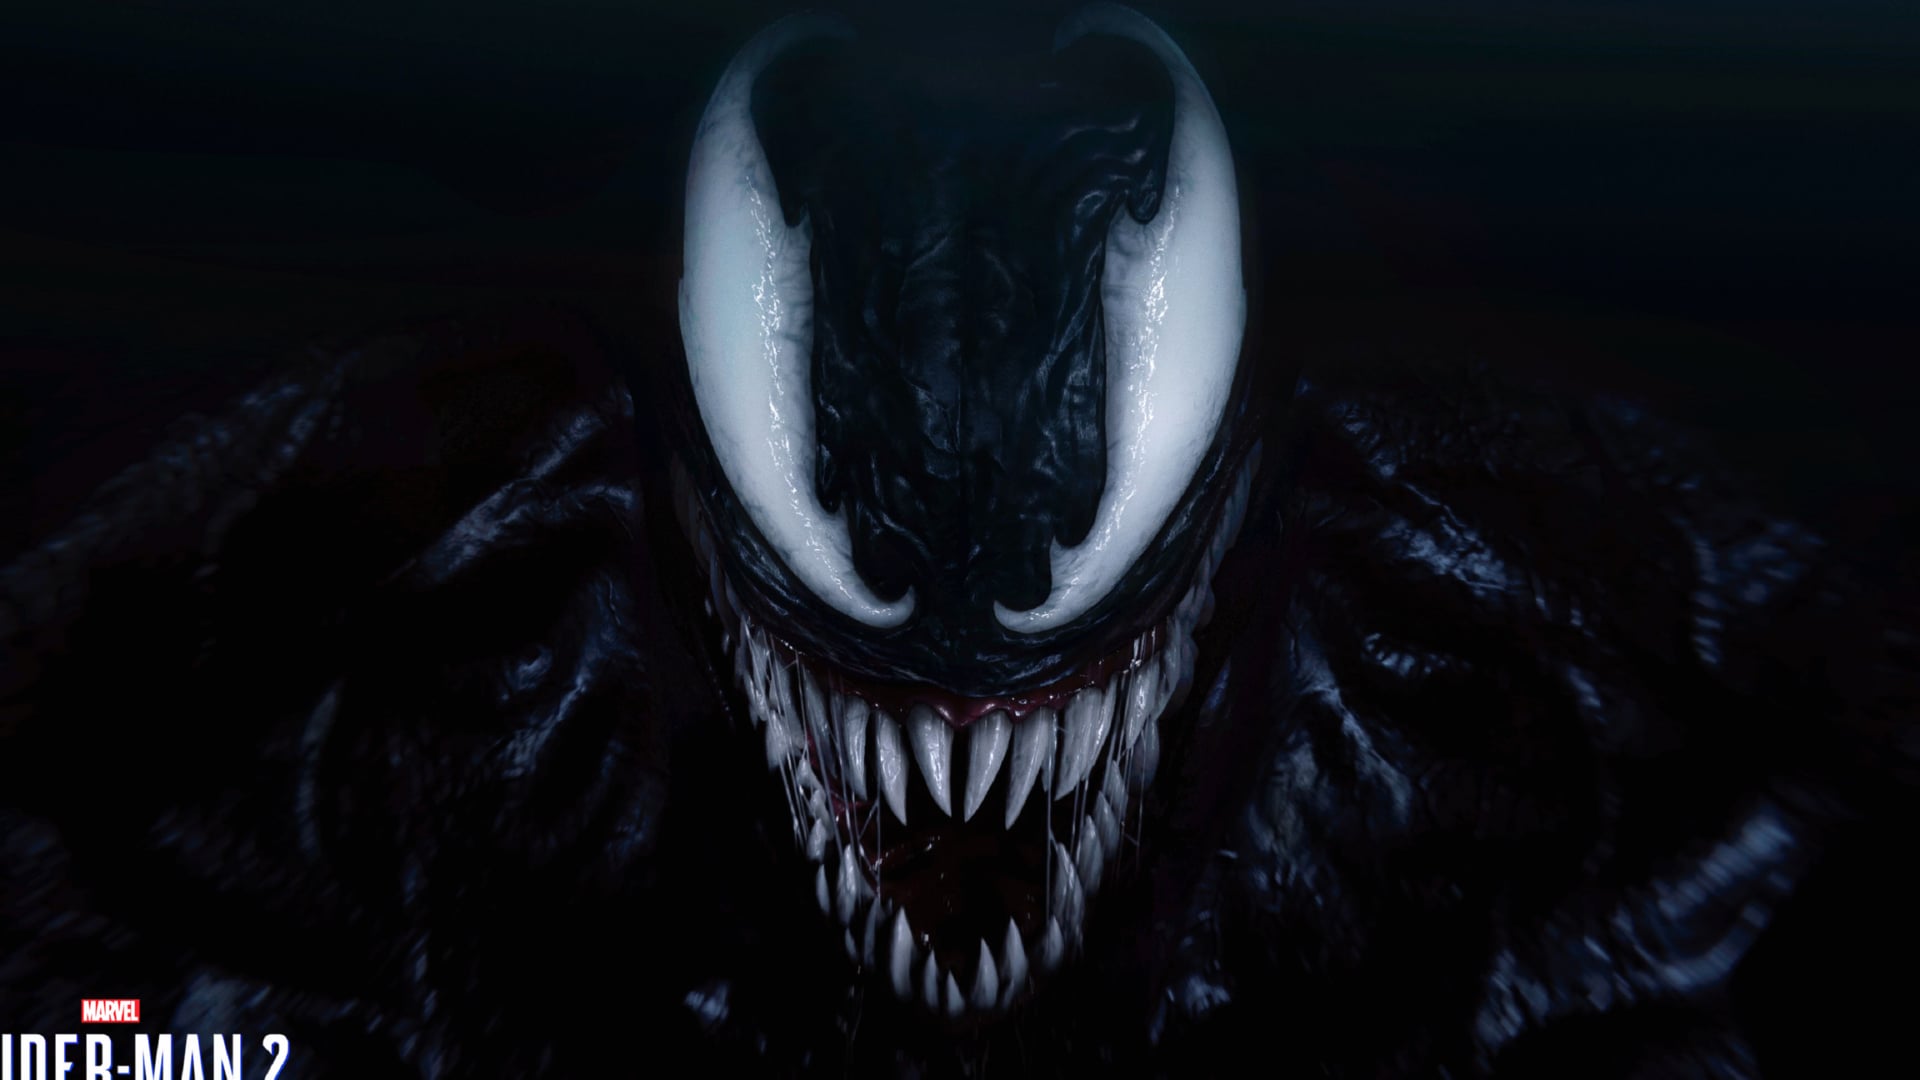 Digital Art Venom at 1280 x 960 size wallpapers HD quality